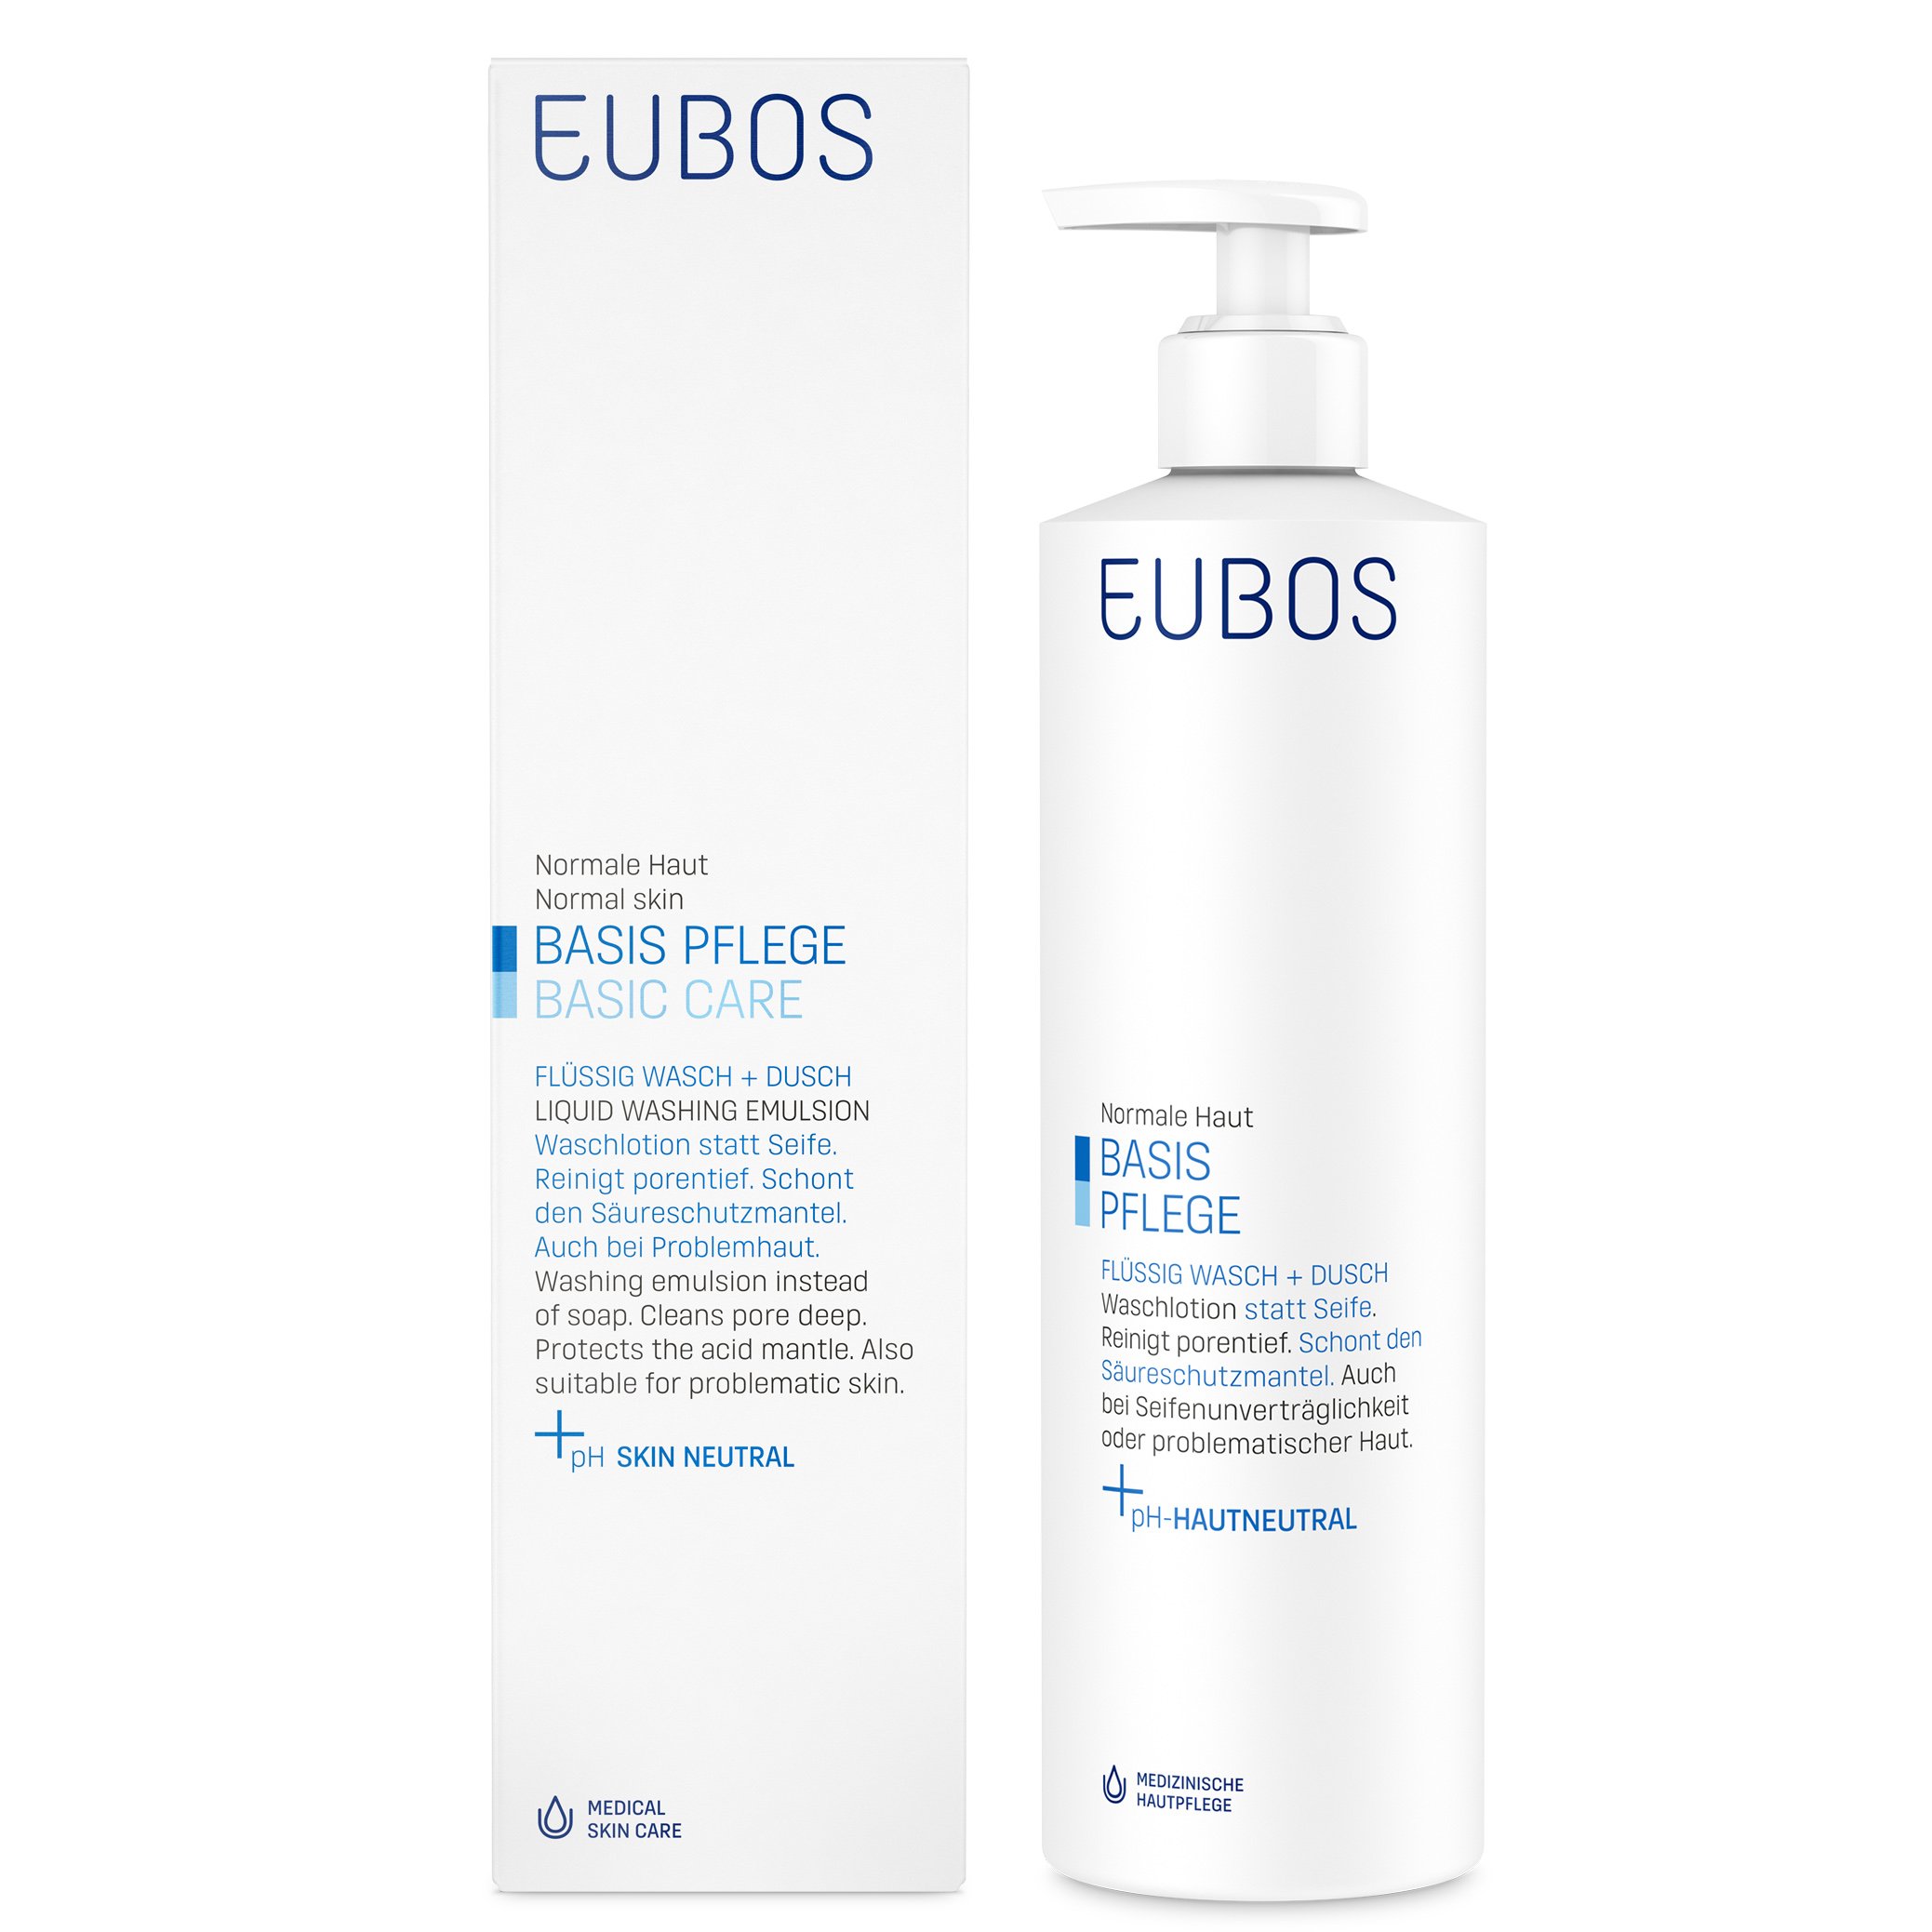 Eubos Liquid Blue Υγρό Καθαρισμού, για τον Καθημερινό Καθαρισμό & την Περιποίηση Προσώπου & Σώματος – 400ml